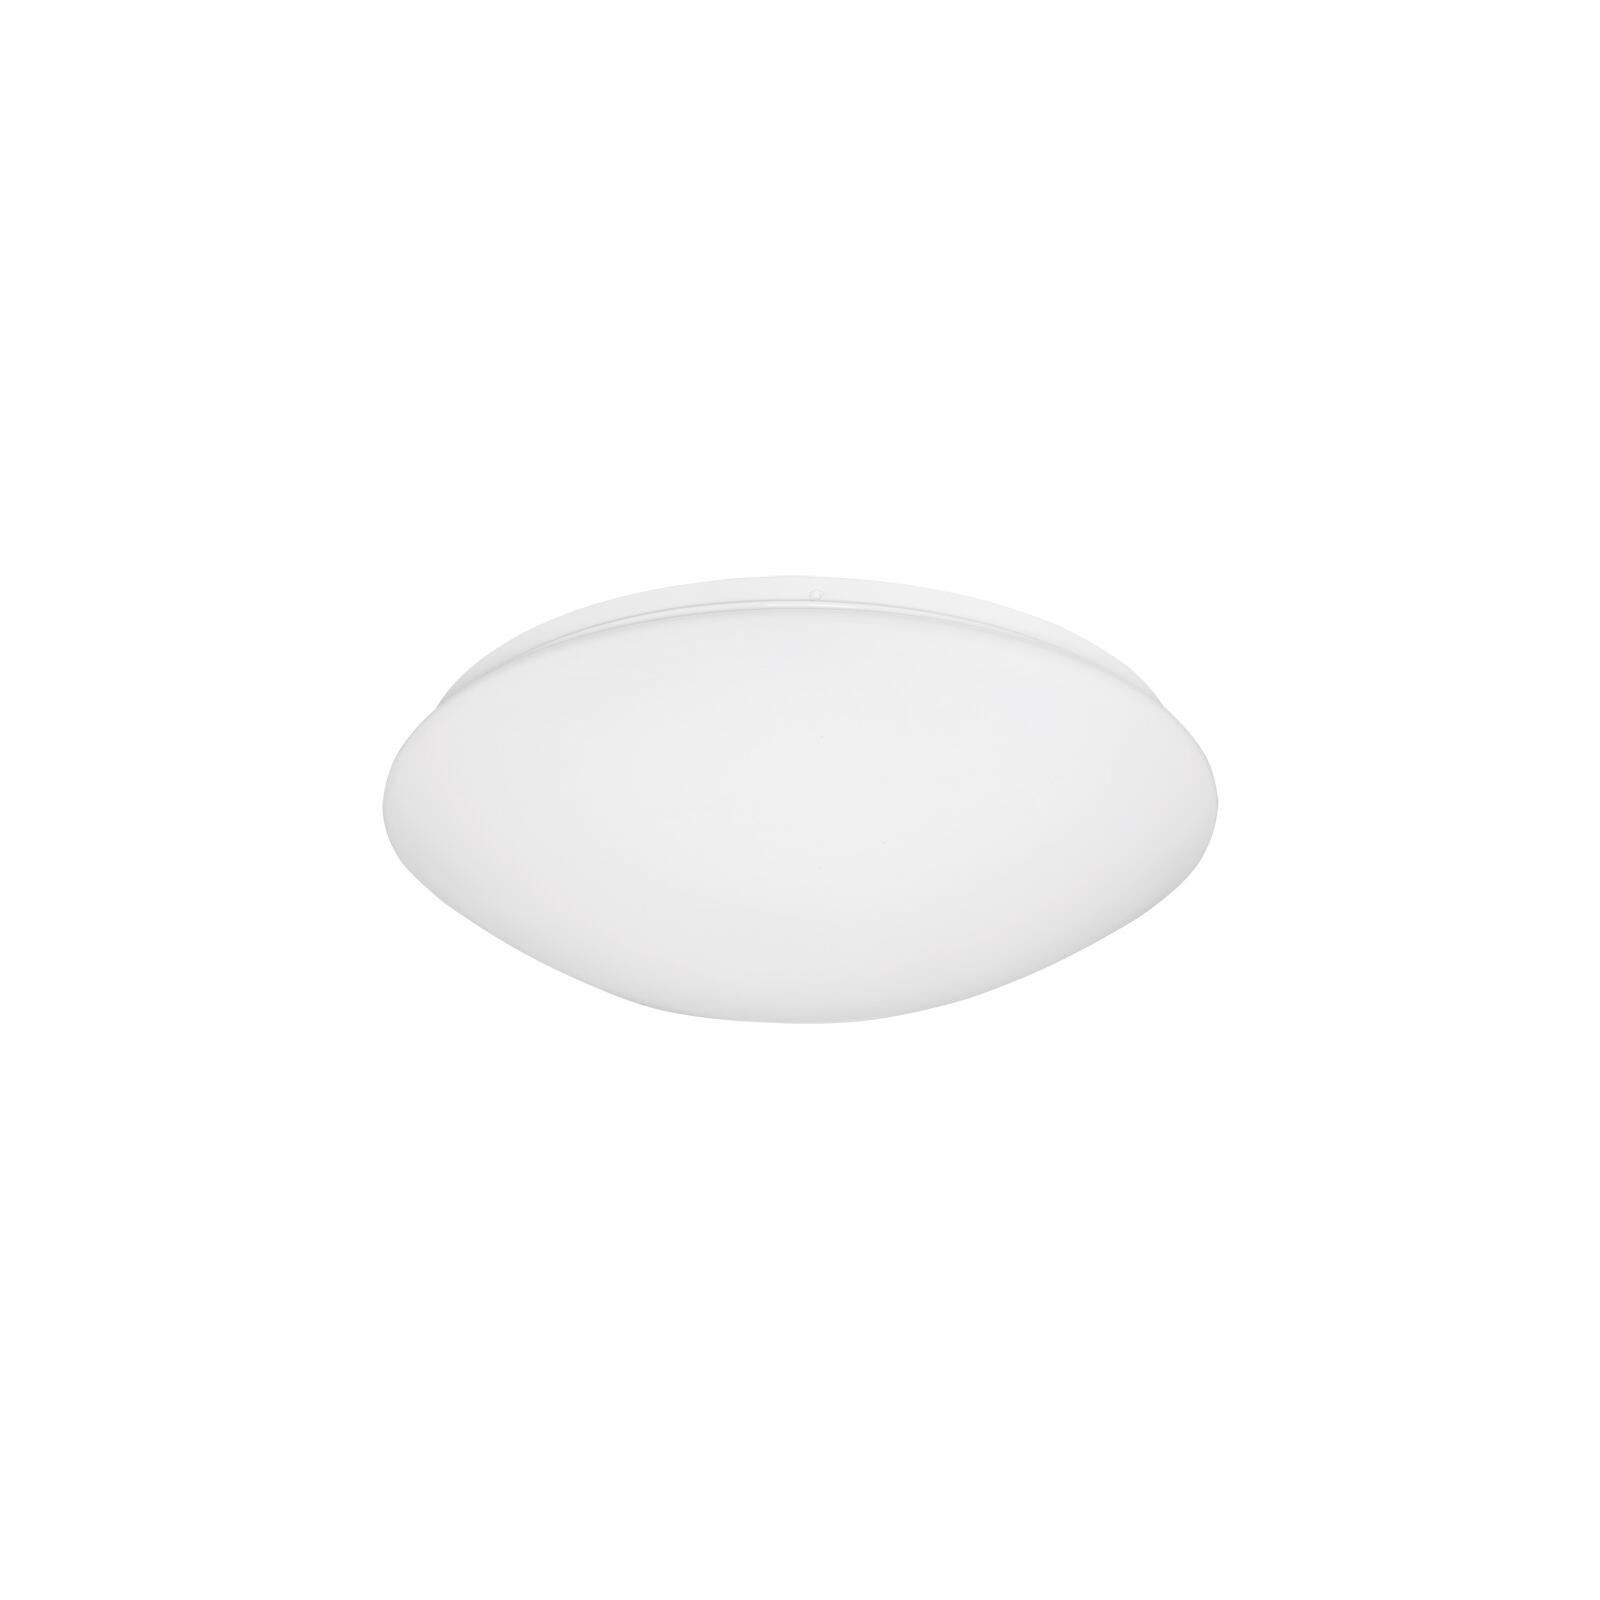 Deckenschale Kunststoff, opal weiß 39 cm - Lampen & Leuchten Onlineshop